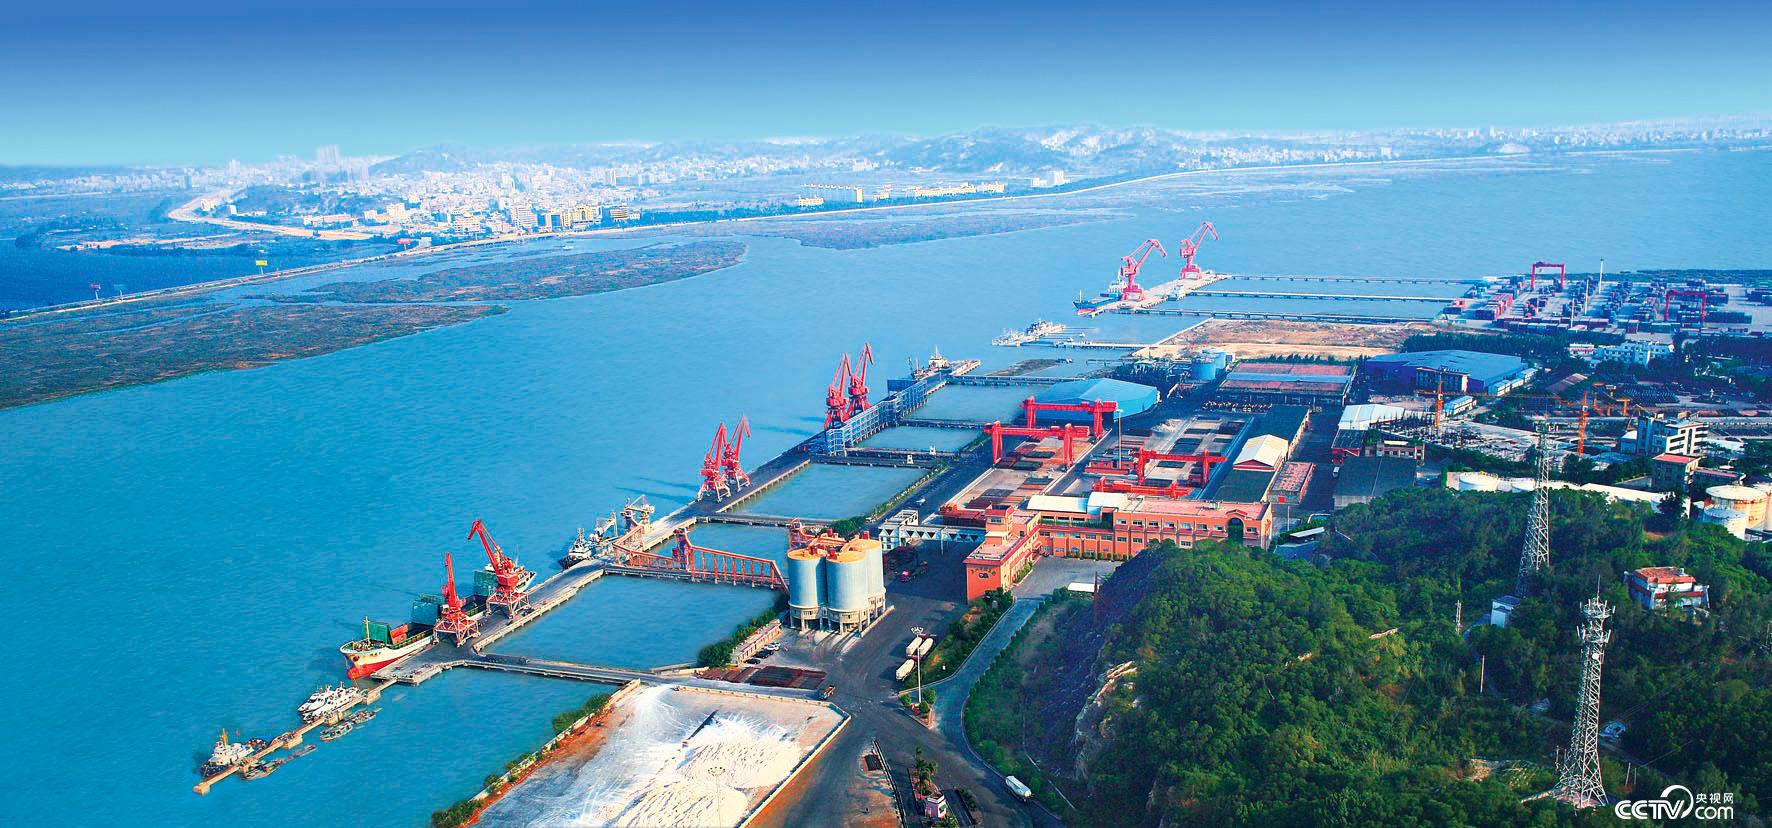 泉州港主要有泉州湾、深沪湾和围头湾3个港区。图为泉州港后渚港区。